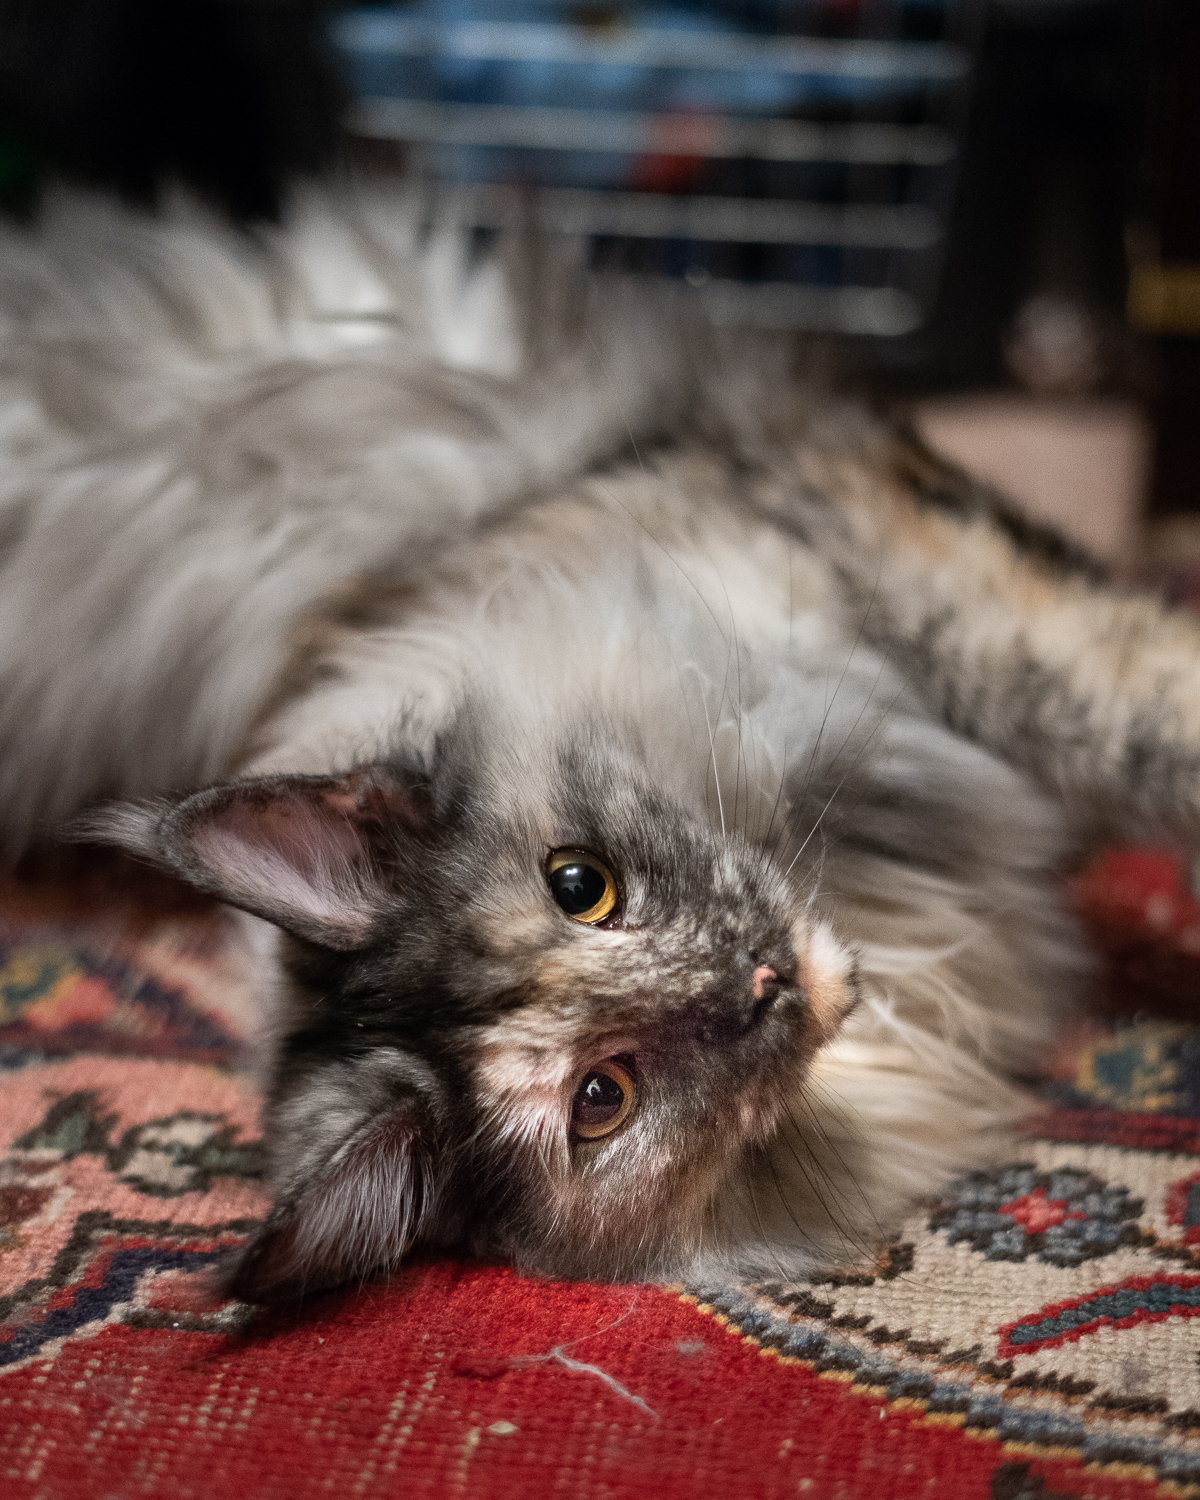 Fotografietipps für Haustiere-Katzen Fotografie-wie fotografiere ich meine Katze-Lifestyleblog andysparkles